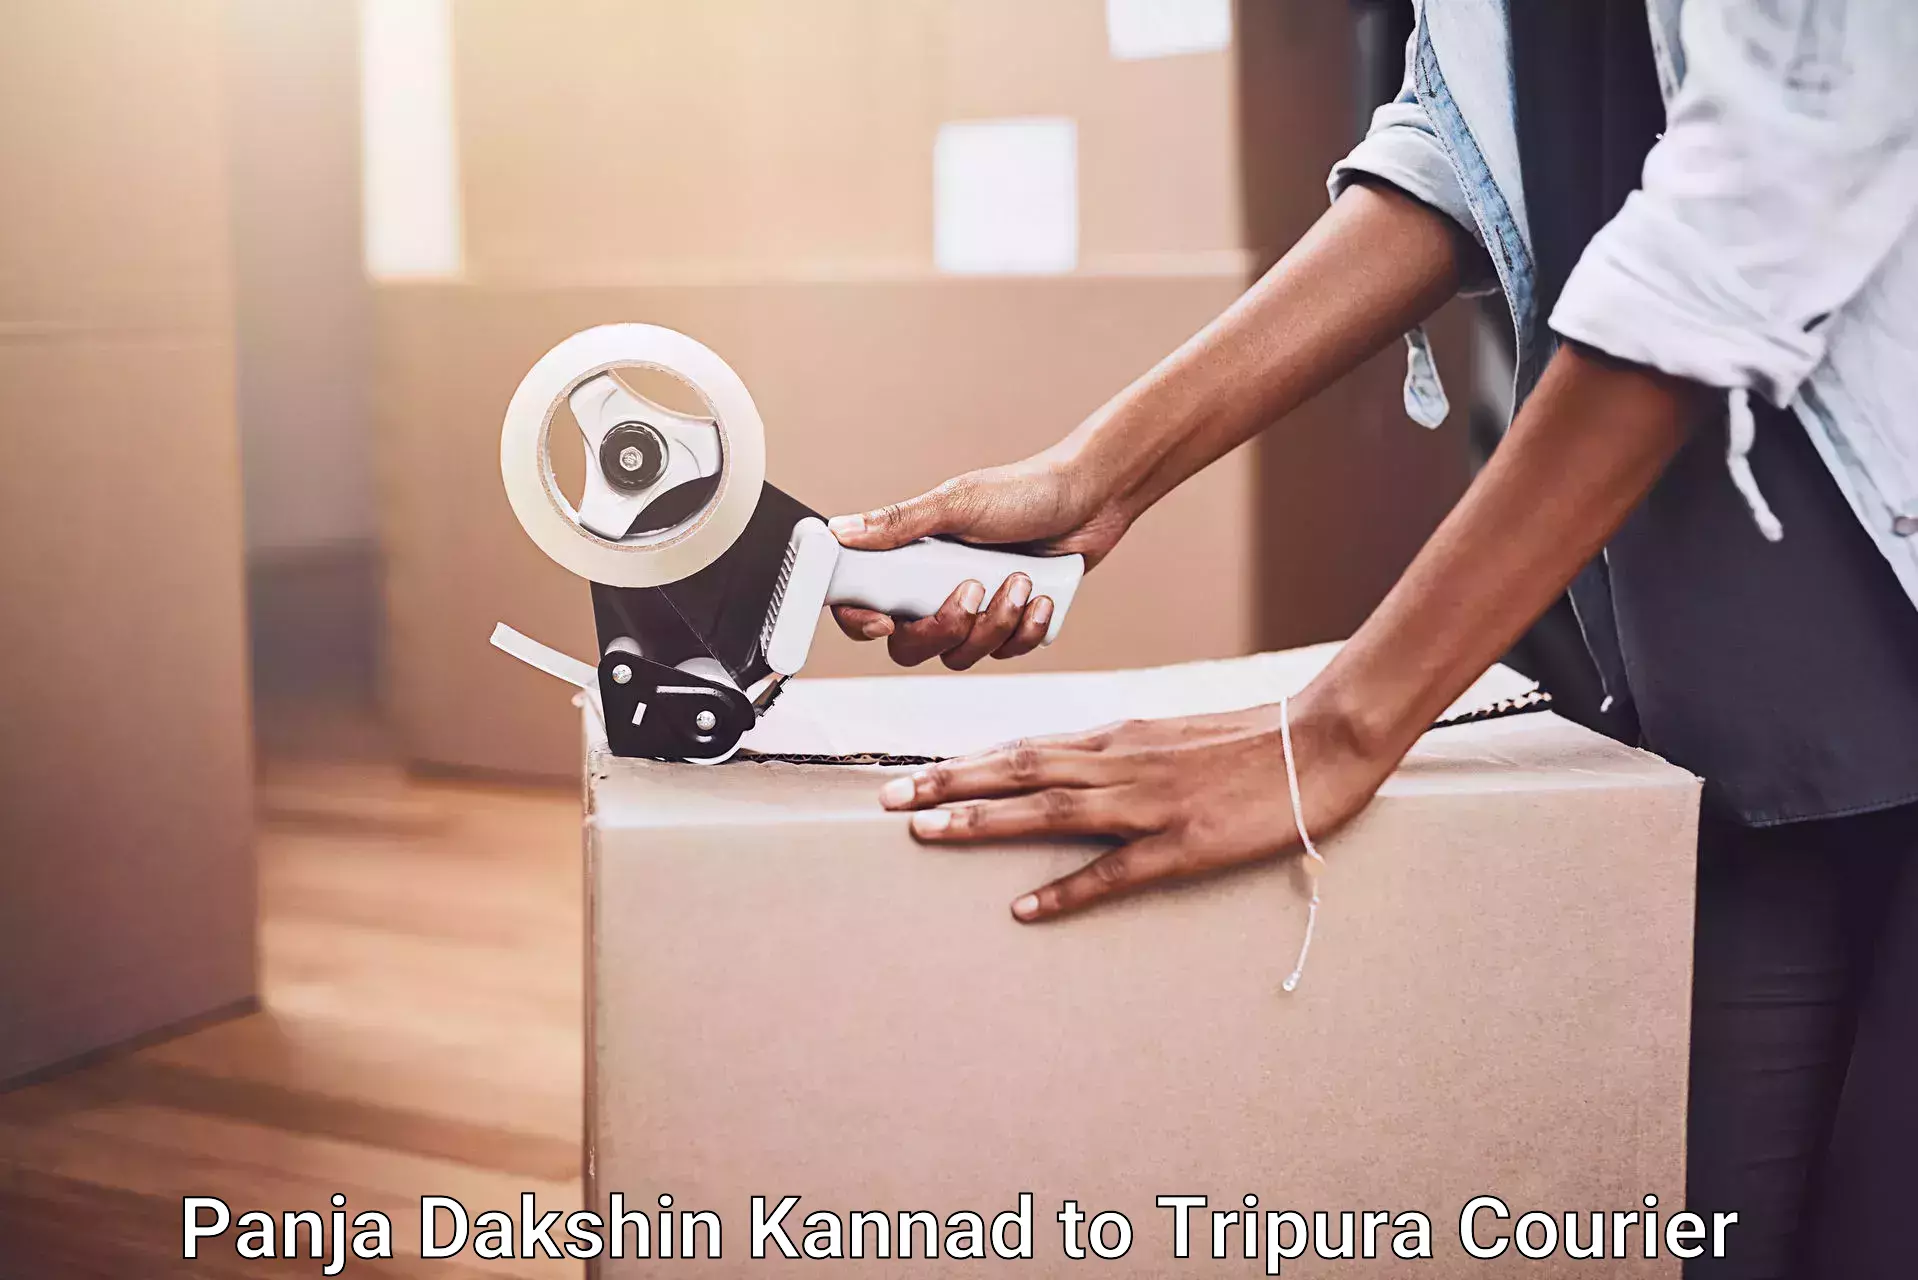 Furniture moving services Panja Dakshin Kannad to Udaipur Tripura